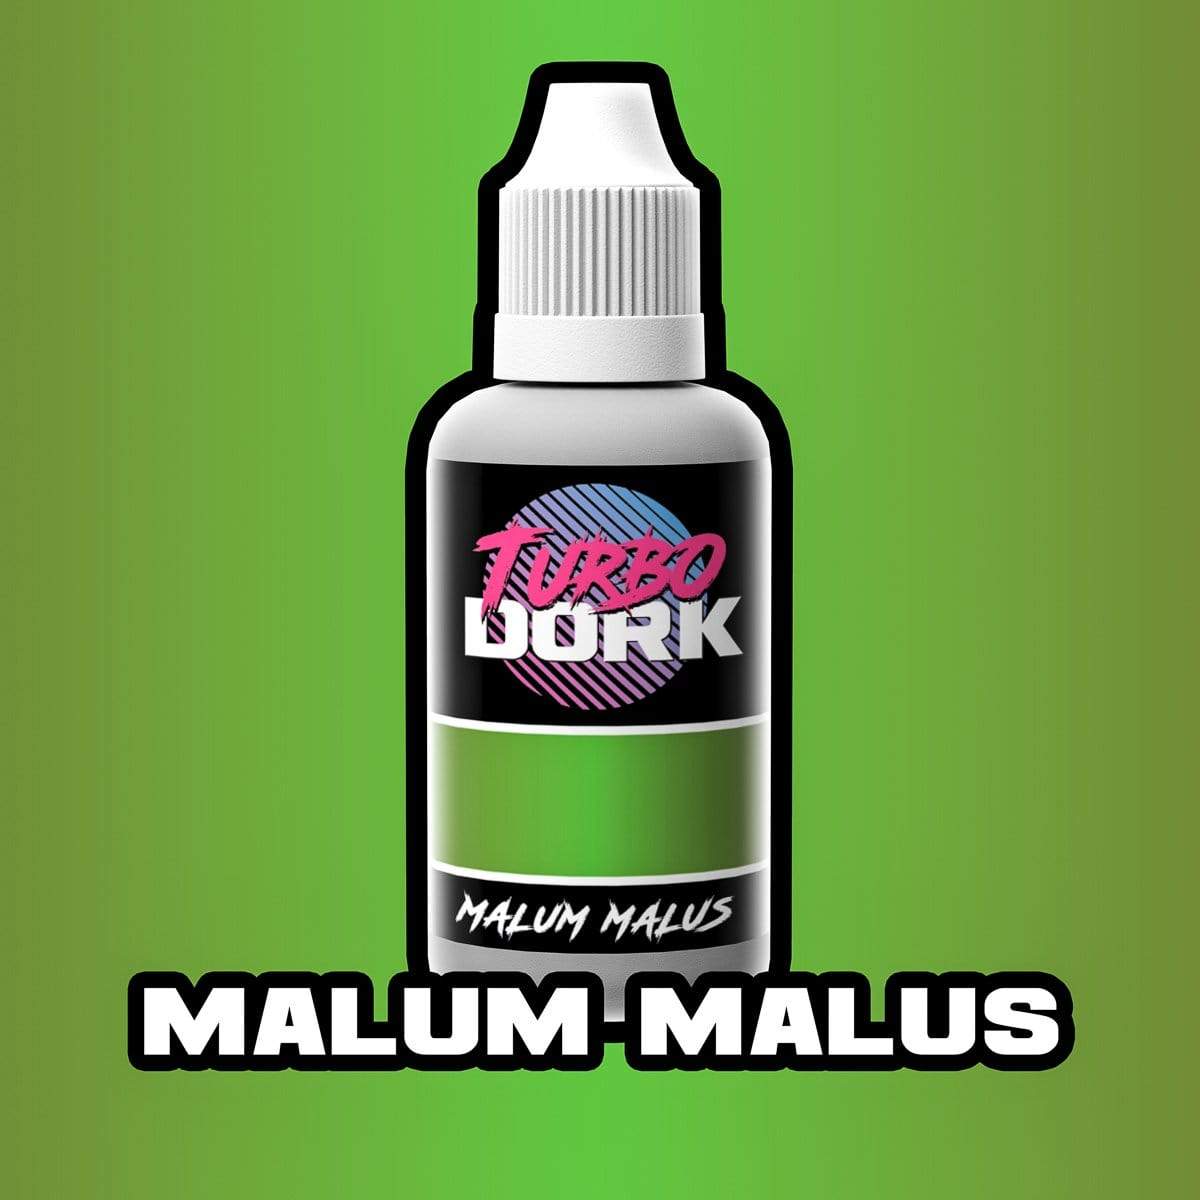 Malum Malus Metallic Acrylic Paint Metallic Turbo Dork Exit 23 Games Malum Malus Metallic Acrylic Paint